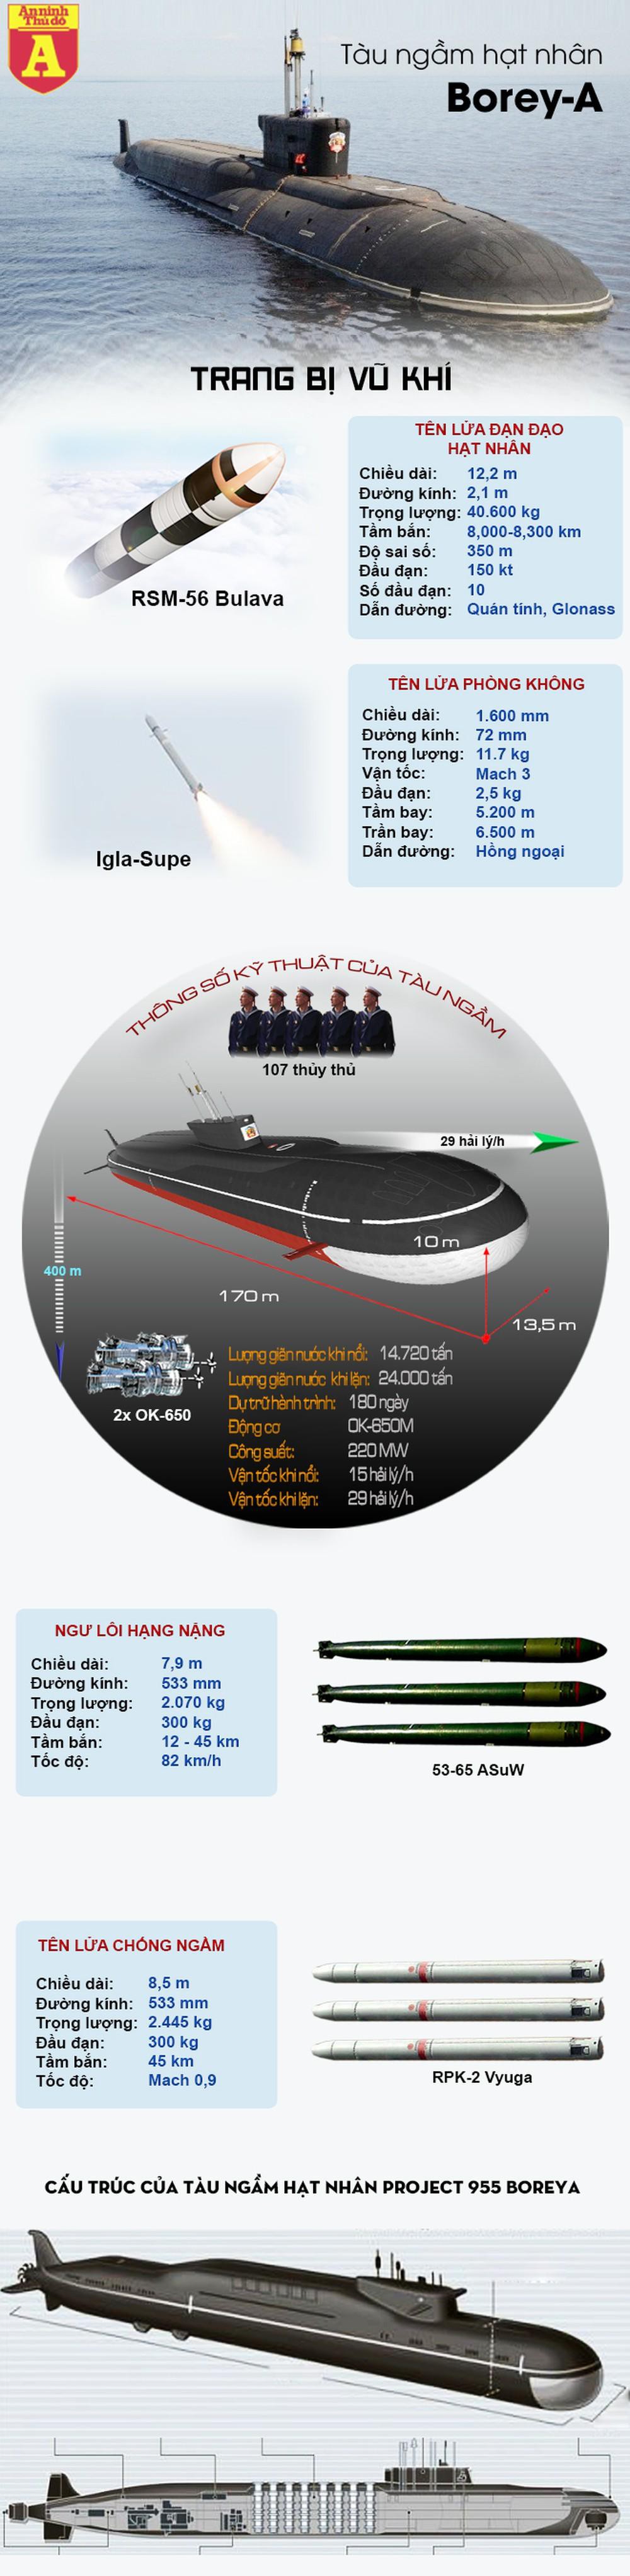 [Infographics] "Quái thú hạt nhân" Borey-A trong Hạm đội Thái Bình Dương của Nga - Ảnh 1